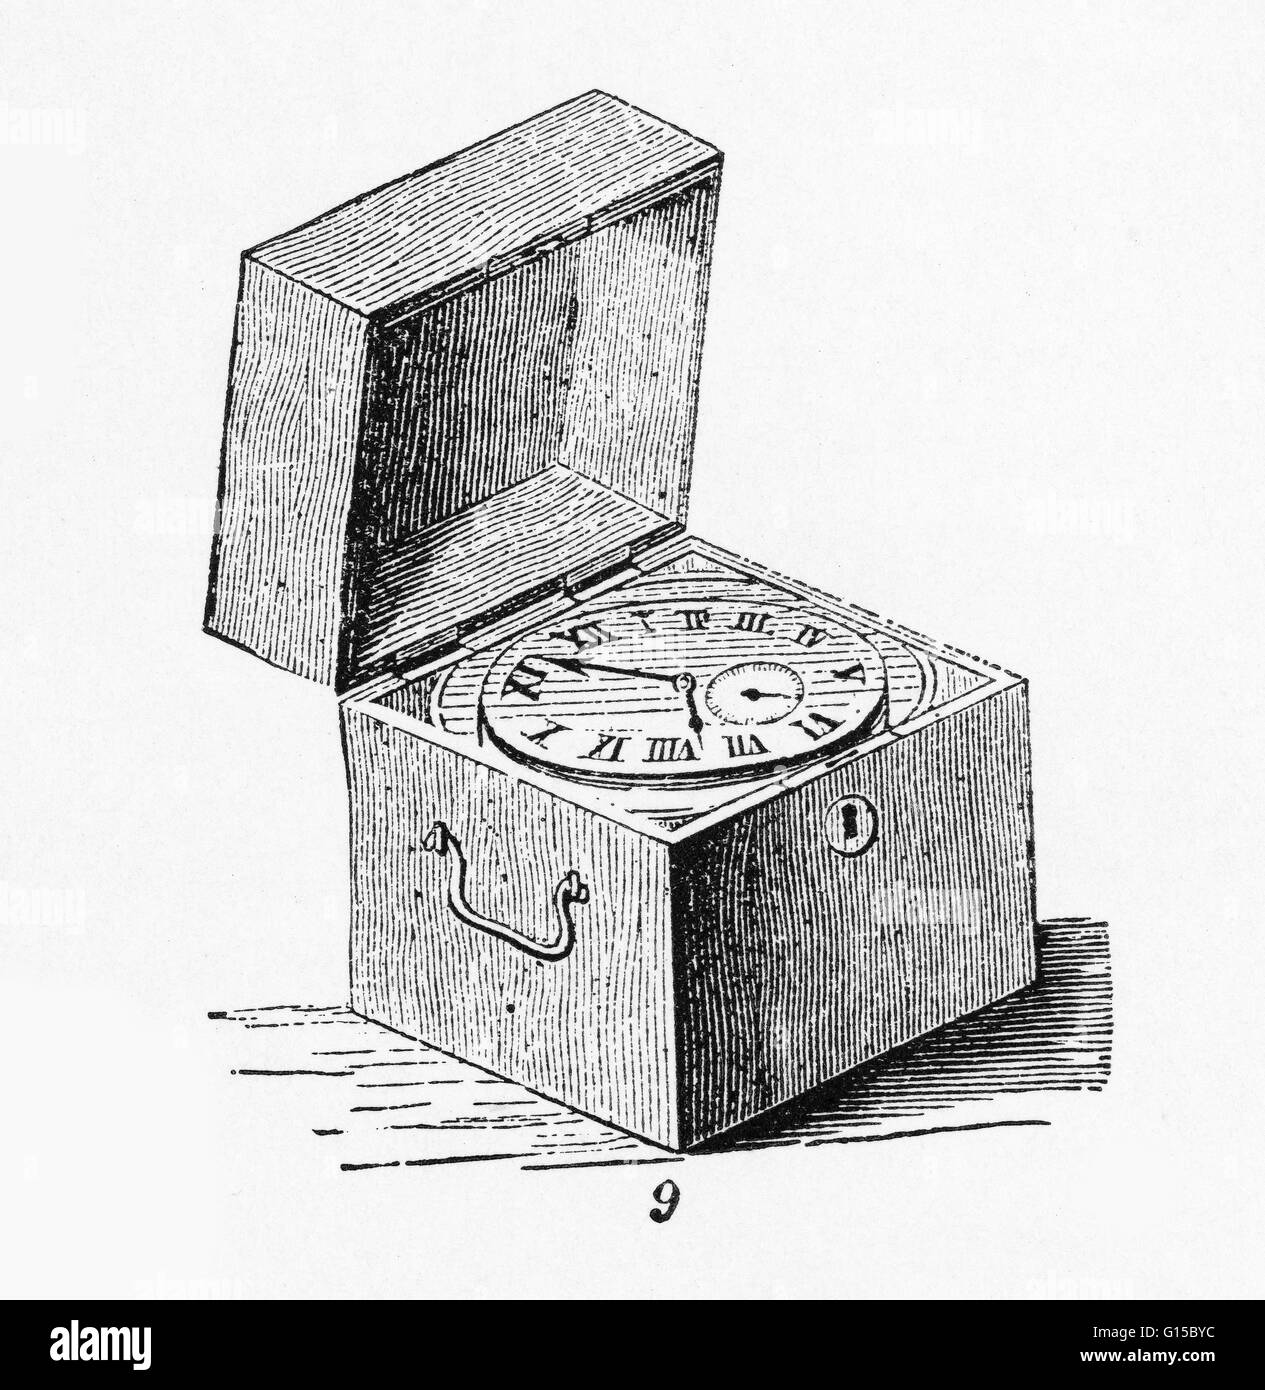 Una scatola cronometro, che è una nave che il cronometro è montato in sospensioni cardaniche per preservare la sua posizione corretta. Foto Stock